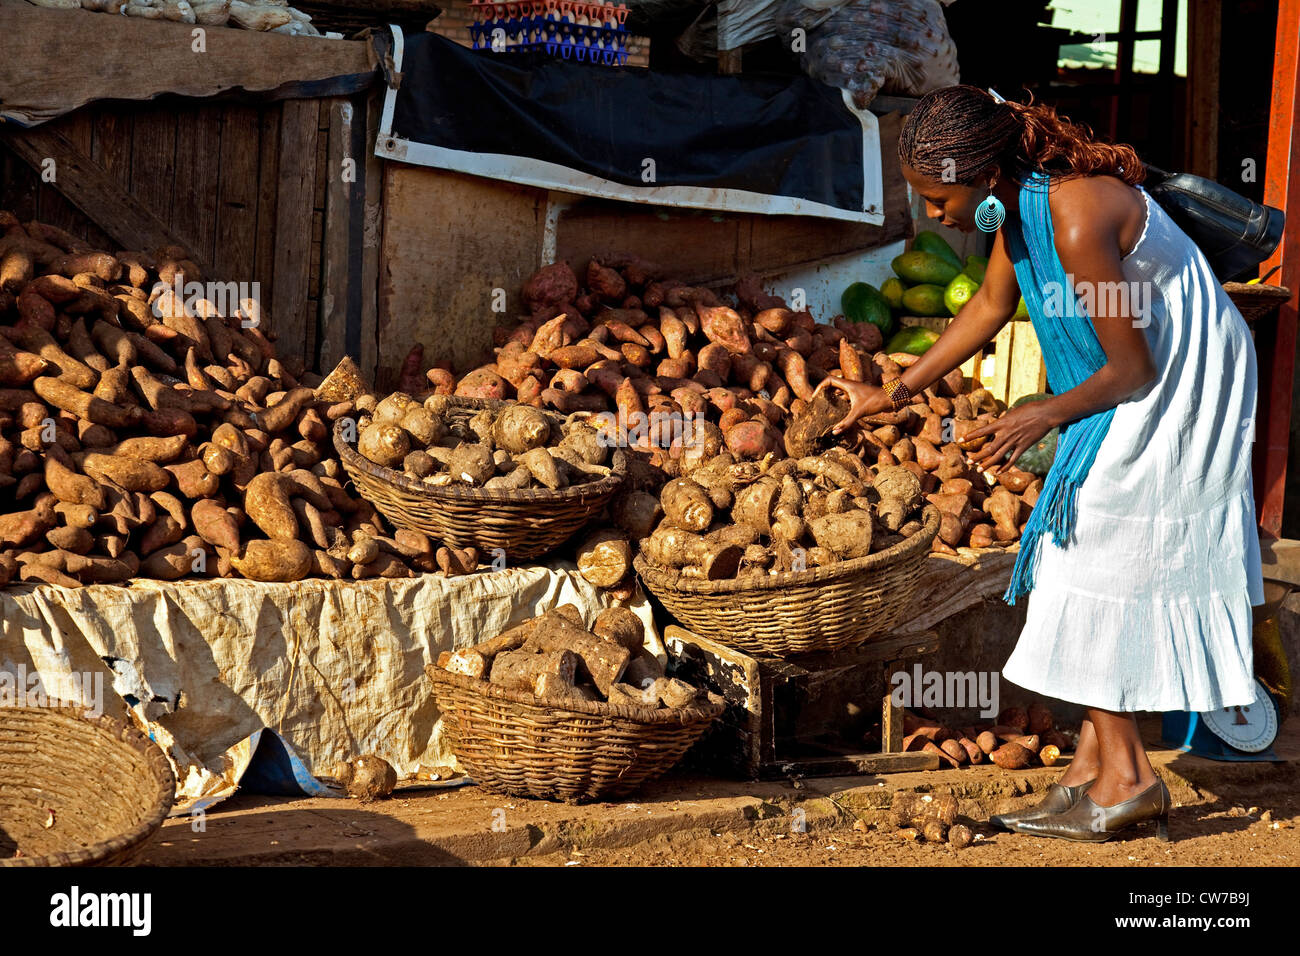 Jeune femme la sélection de meilleurs fruits au stand du marché avec des pommes de terre et l'igname, du Rwanda, de Nyamirambo, à Kigali Banque D'Images